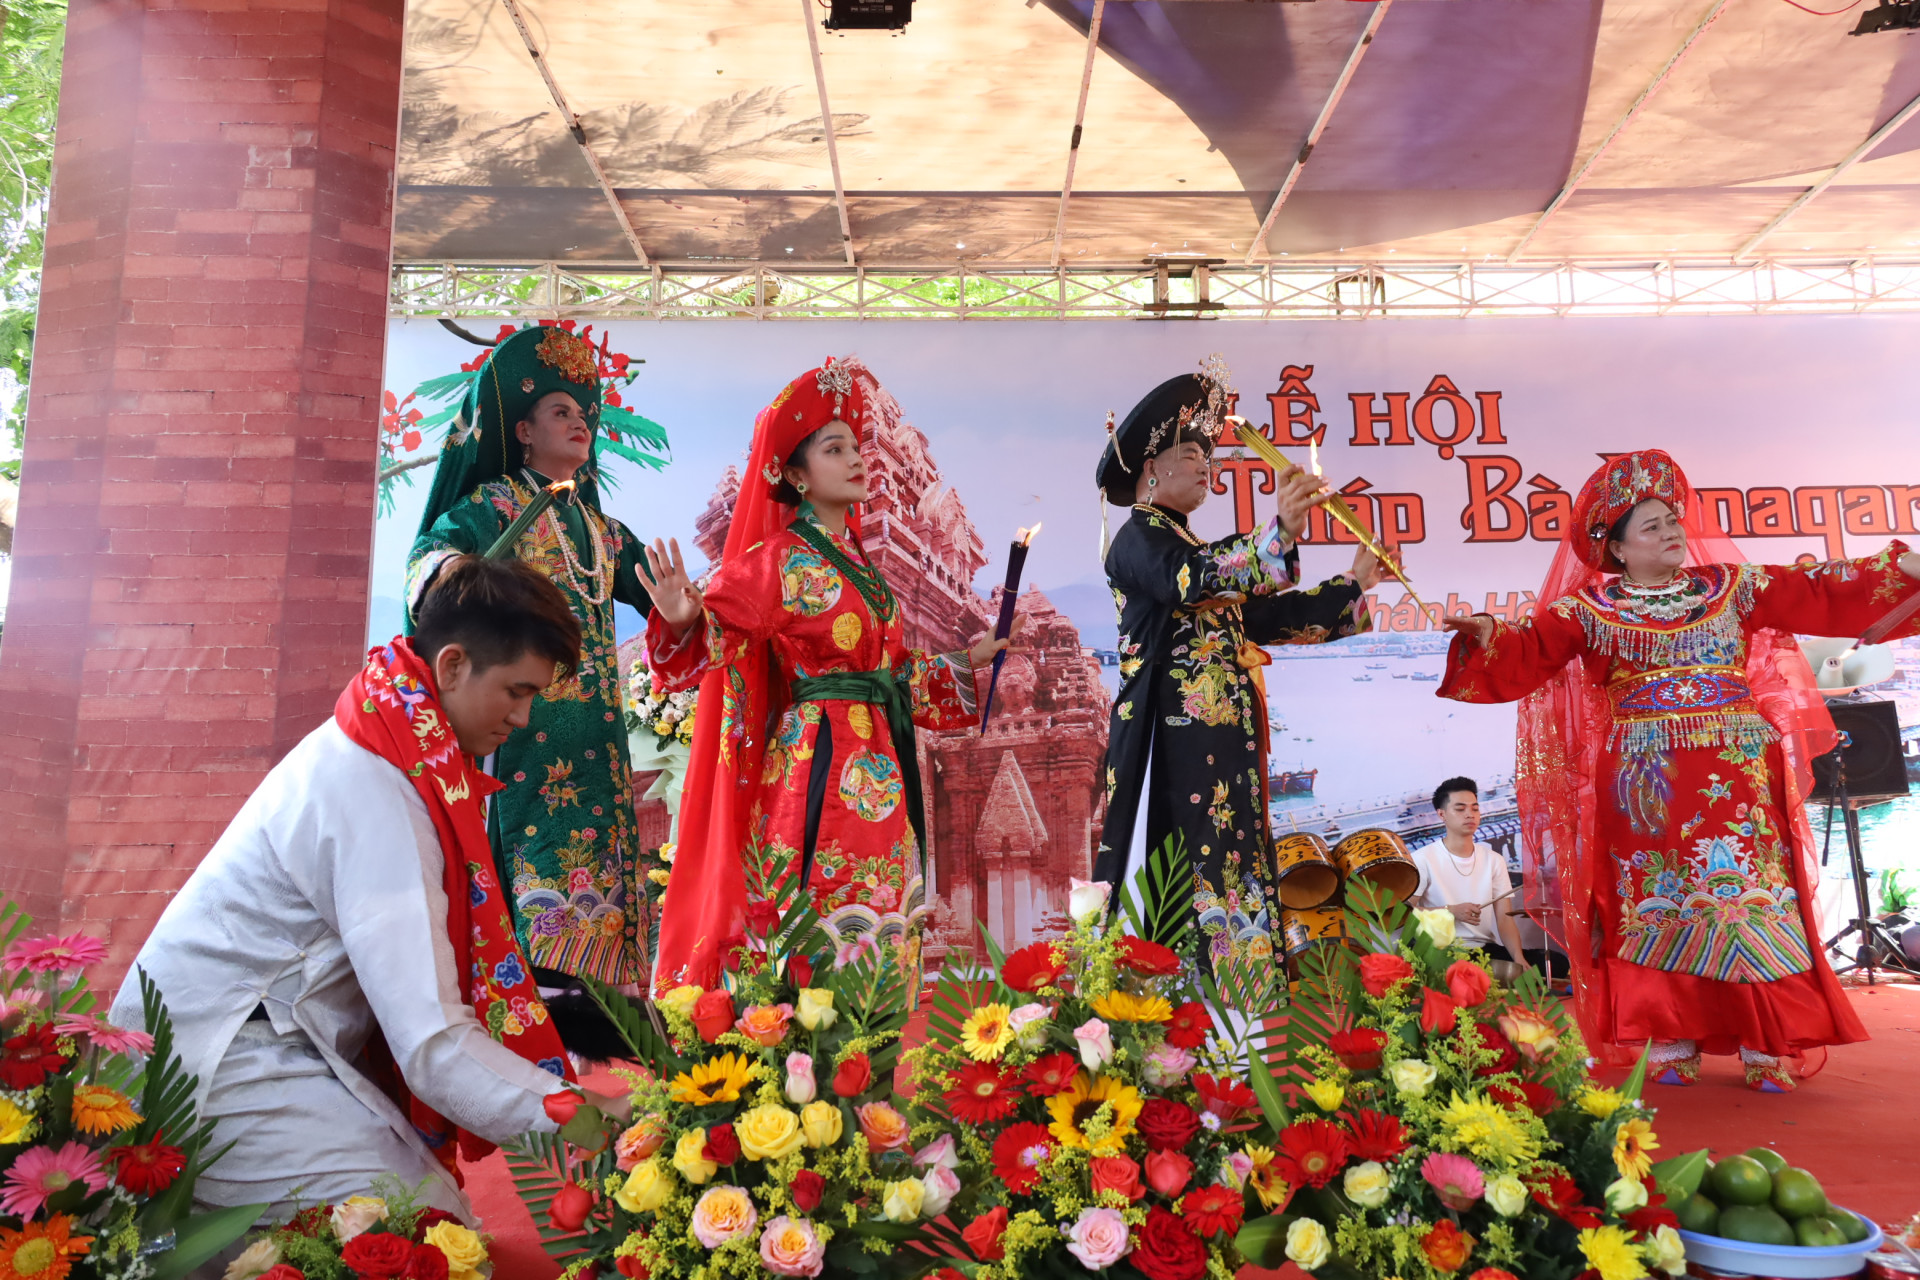 Hoạt động hát văn múa bóng của các đoàn hành hương trong Lễ hội Tháp Bà Ponagar.